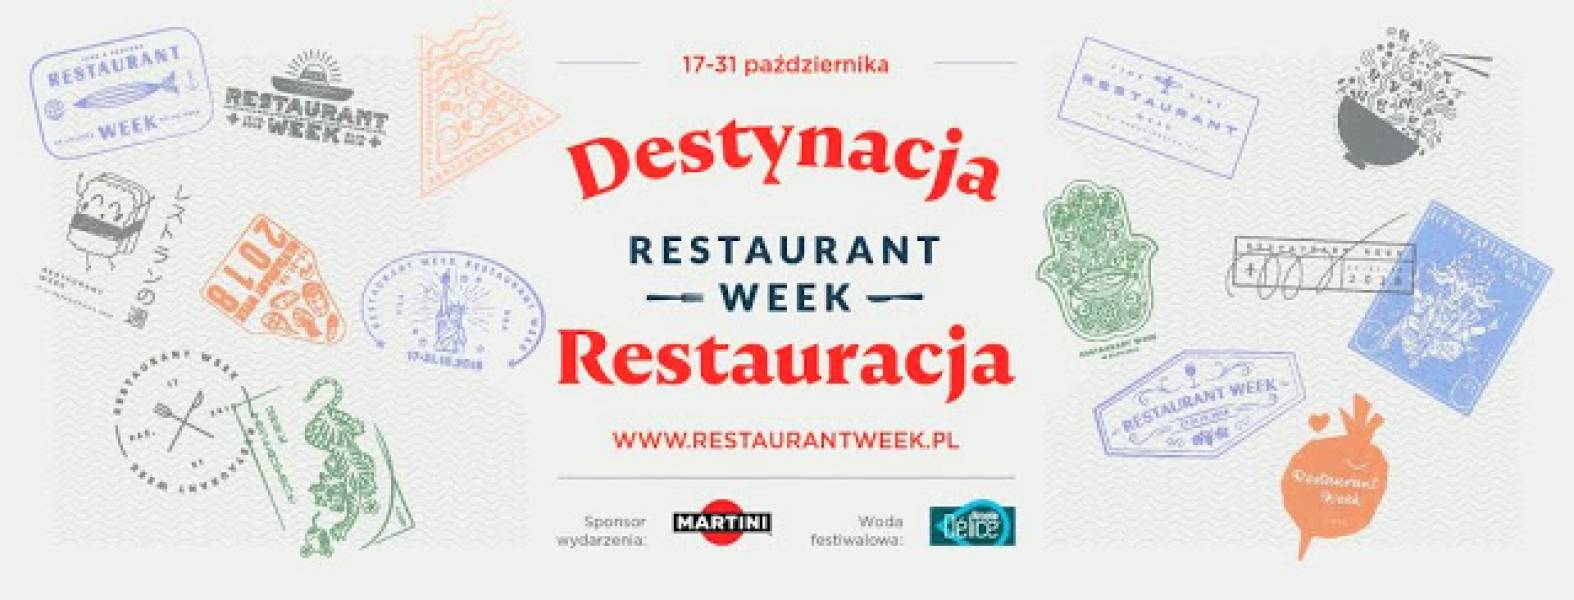 Restaurant Week Polska w Pod Wiązem